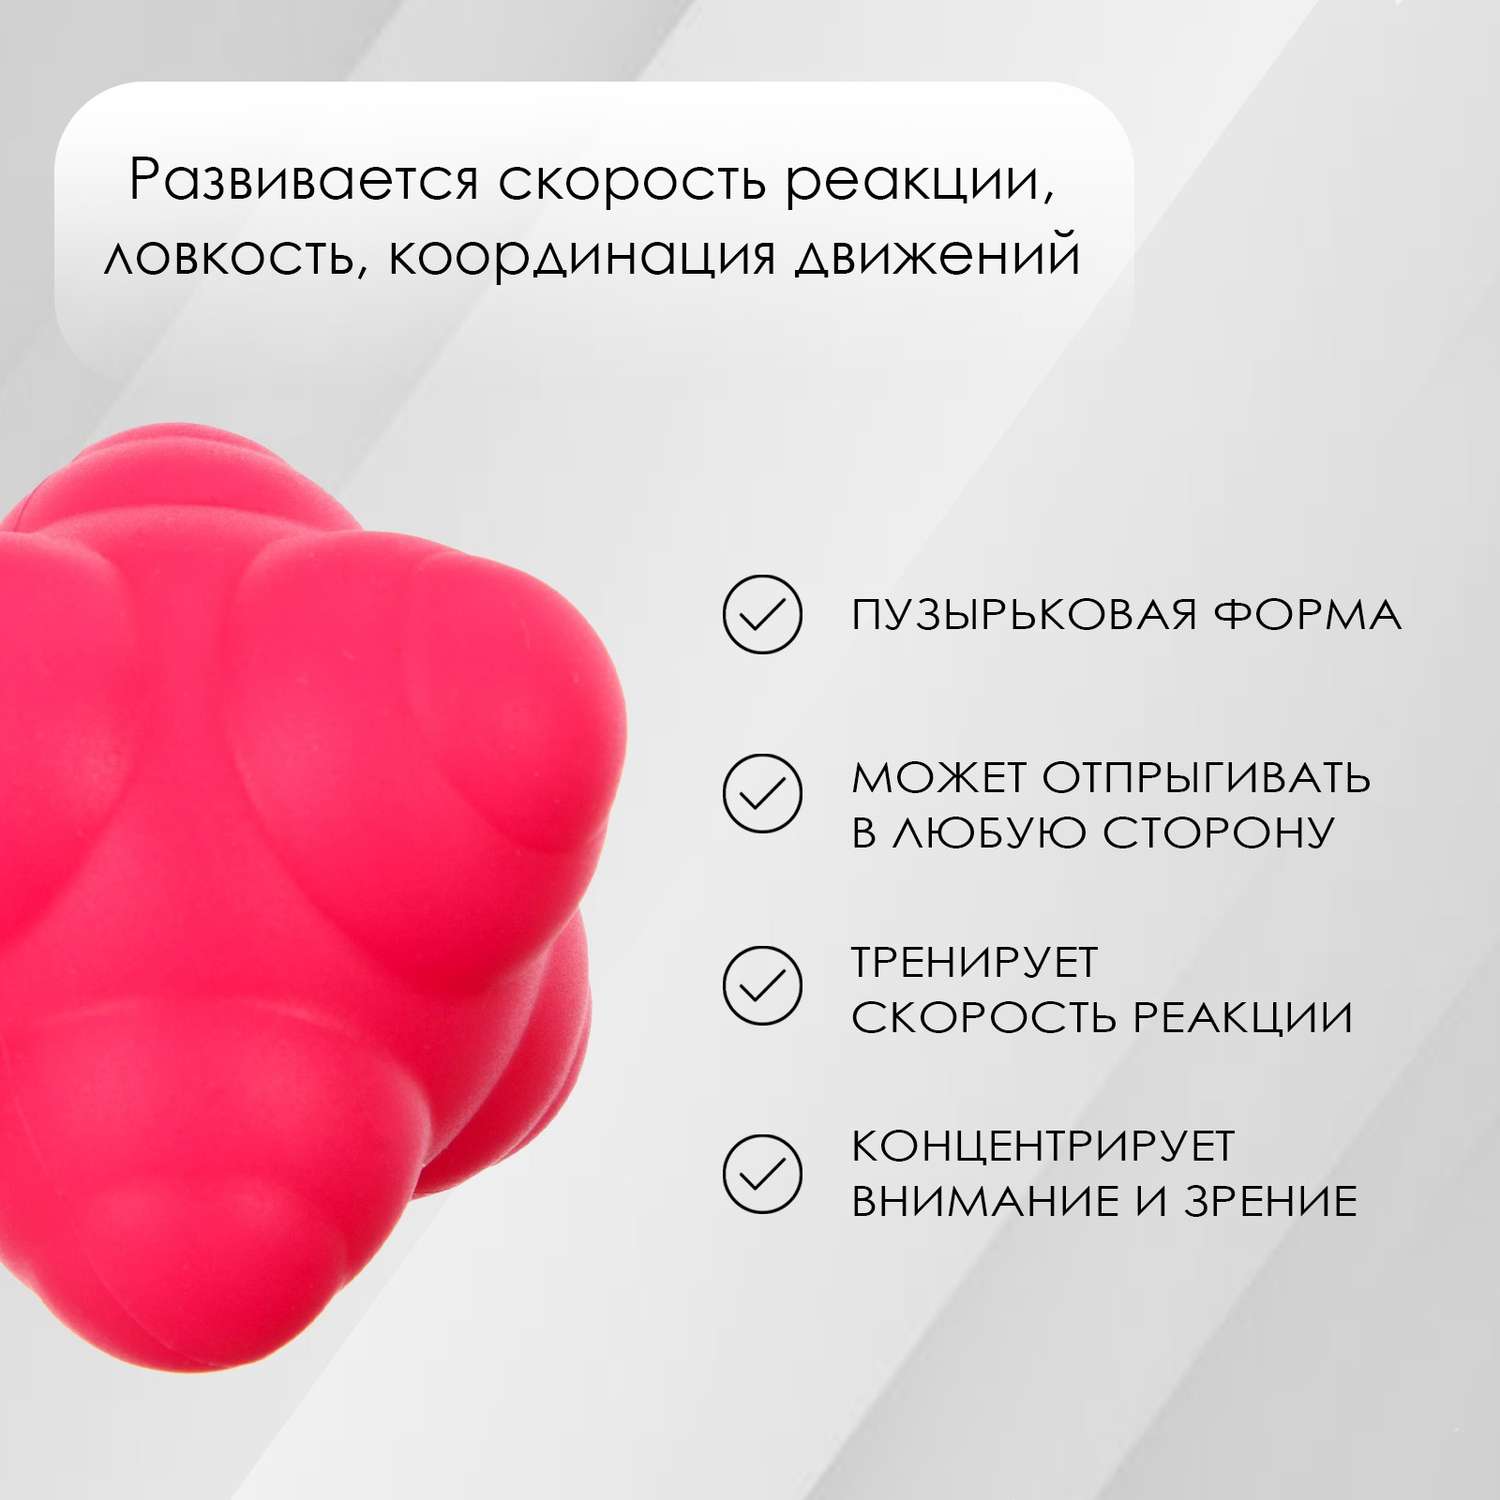 Мяч ONLITOP для тренировки скорости реакции. цвет розовый - фото 2